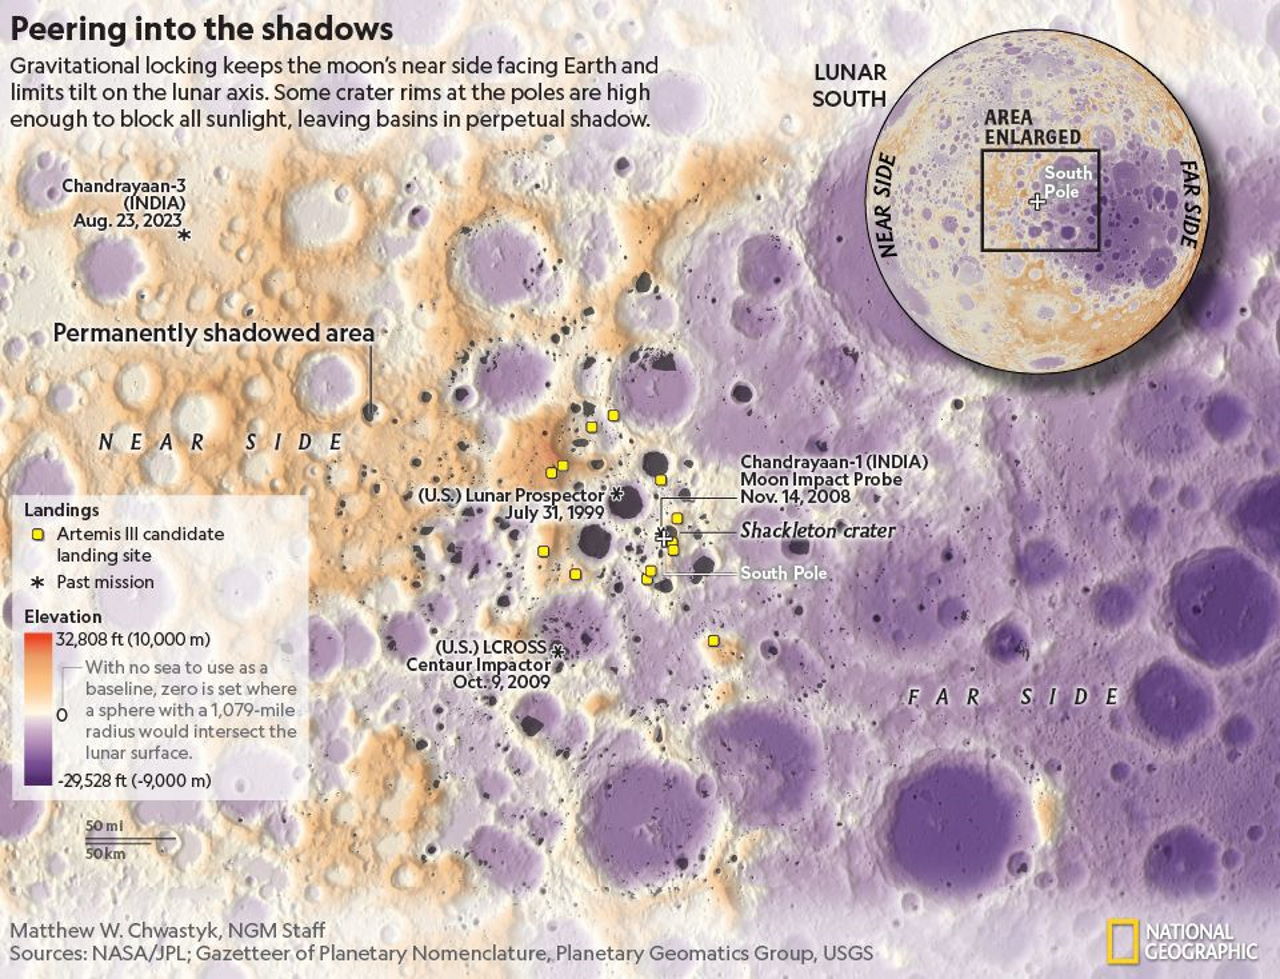 Нова мапа південного полюса Місяця біля кратера Шеклтон, яку створили завдяки світлинам. Жовтим позначені місця висадки астронавтів&amp;nbsp;«Артеміда-3».&amp;nbsp;NASA / PL; Gazetteer of Planetary Nomenclature, Planetary Geomatics Group, USGS, Matthew W. Chwastyk, NGM Staff